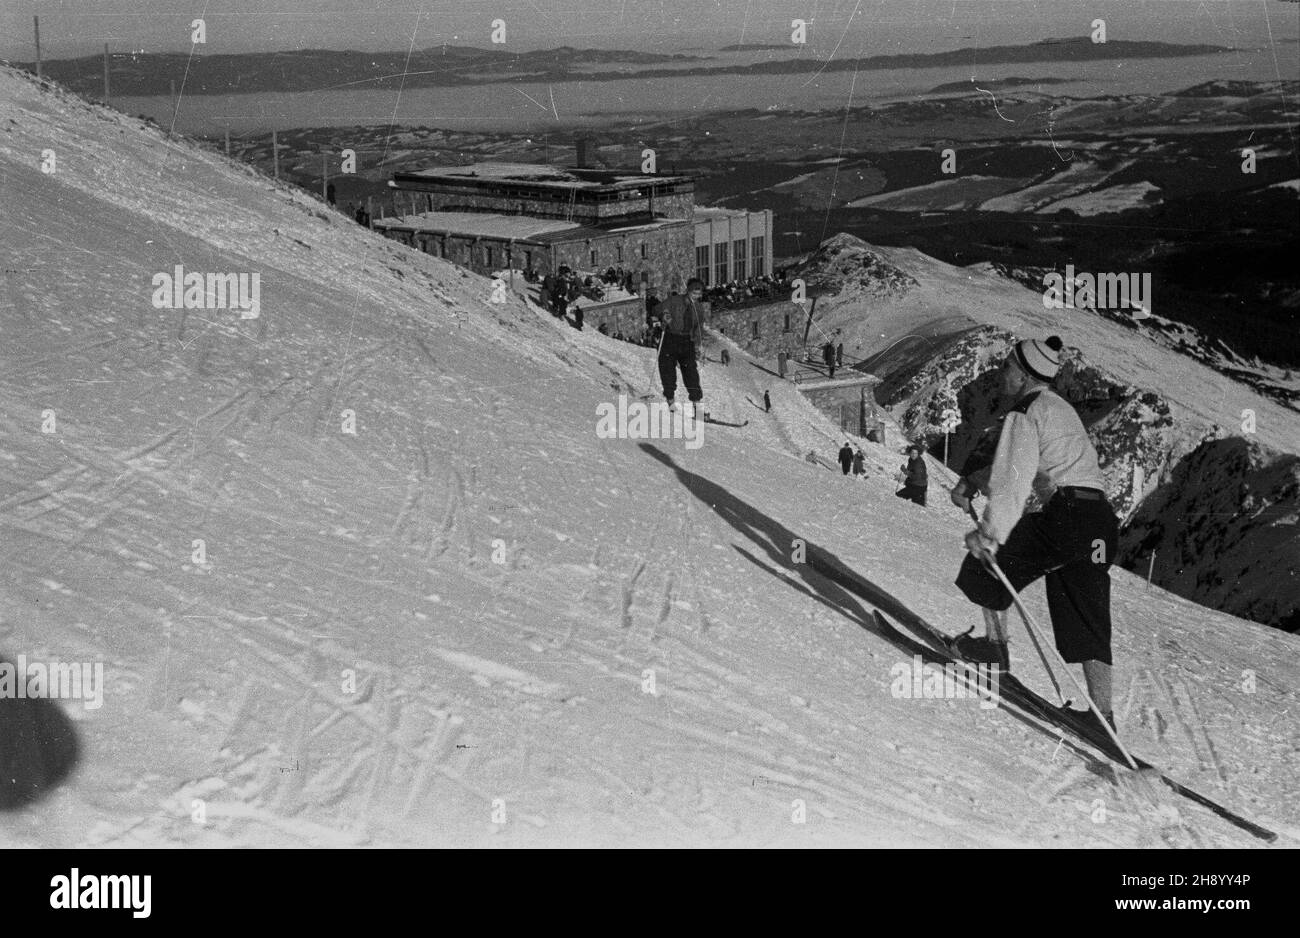 Zakopane, 1947. Narciarz w Tatrach. bb/gr  PAP/Stanis³aw D¹browiecki      Zakopane, 1947. A skier in the Tatra Mountains  bb/gr  PAP/Stanis³aw D¹browiecki Stock Photo